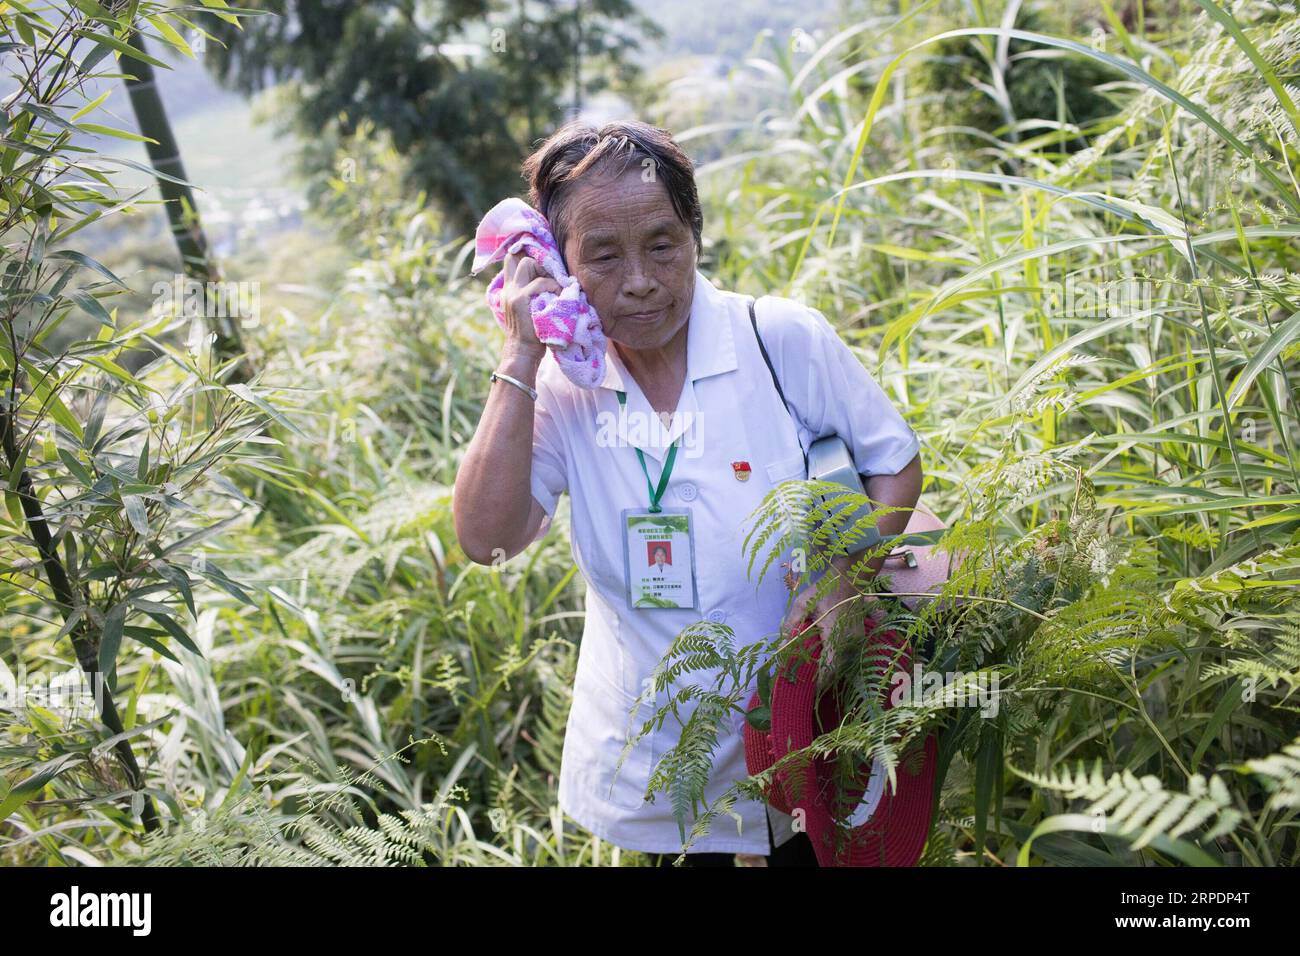 (190809) -- NANCHANG, 9 août 2019 -- Gao Yinshui est vue en route pour une visite à domicile dans le village de Lixin de la ville de Meiling dans le district de Wanli de la ville de Nanchang, province de Jiangxi dans l'est de la Chine, le 8 août 2019. Presque tous les jours au cours des quatre dernières décennies, Gao Yinshui, médecin de village de 69 ans, marche sur des kilomètres sur des routes de montagne pour voir ses patients dans neuf villages différents. Fin 1970, la mère de Gao a eu une urgence et a eu la chance d être sauvée par un médecin rural local. À cause de cela, Gao Yinshui a renoncé à l'opportunité d'être enseignant et a choisi de devenir médecin rural. Cependant, elle n'a pas de fou médical Banque D'Images